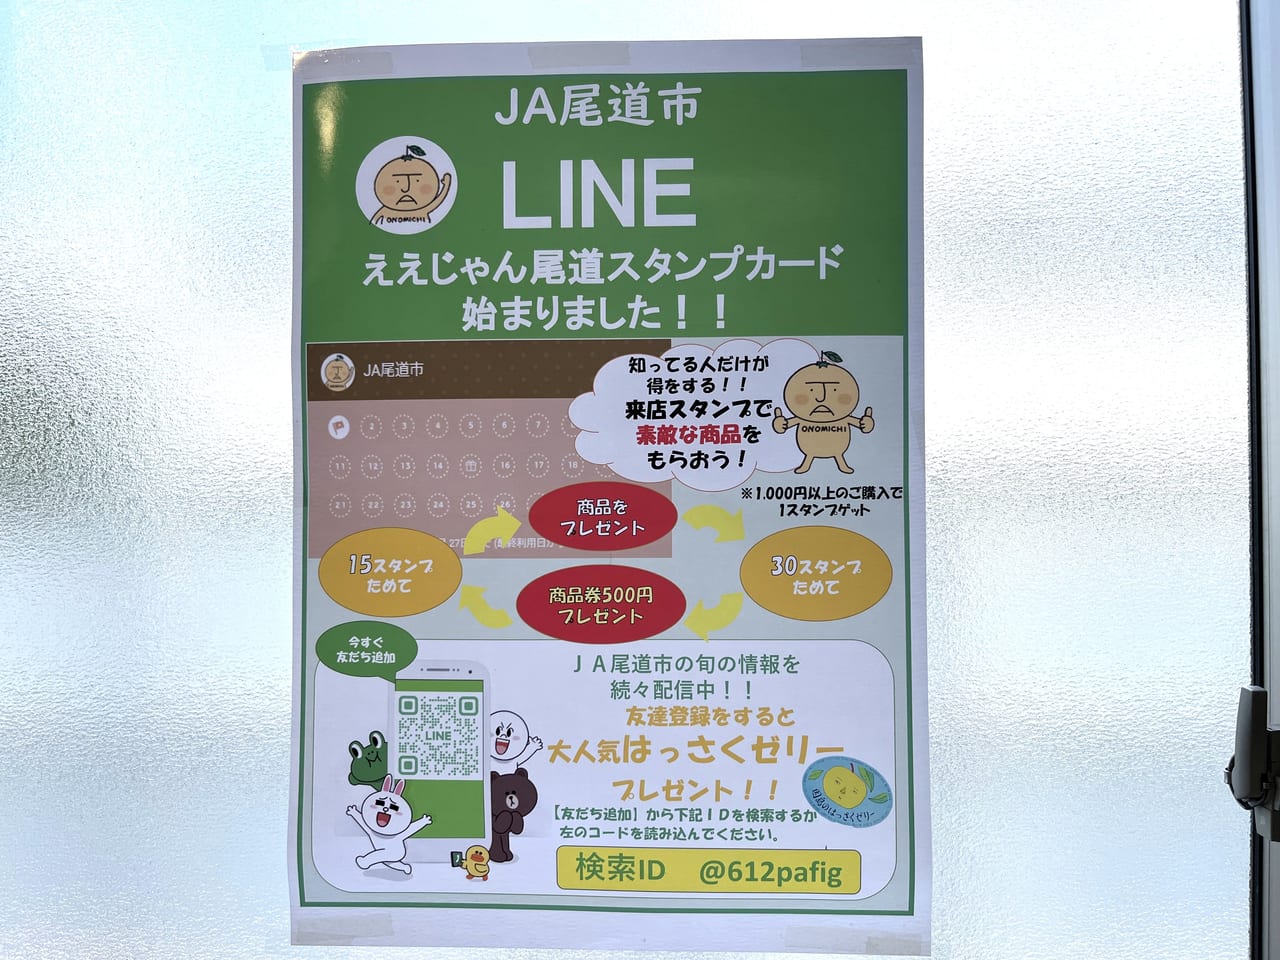 JA尾道公式LINEのお知らせ